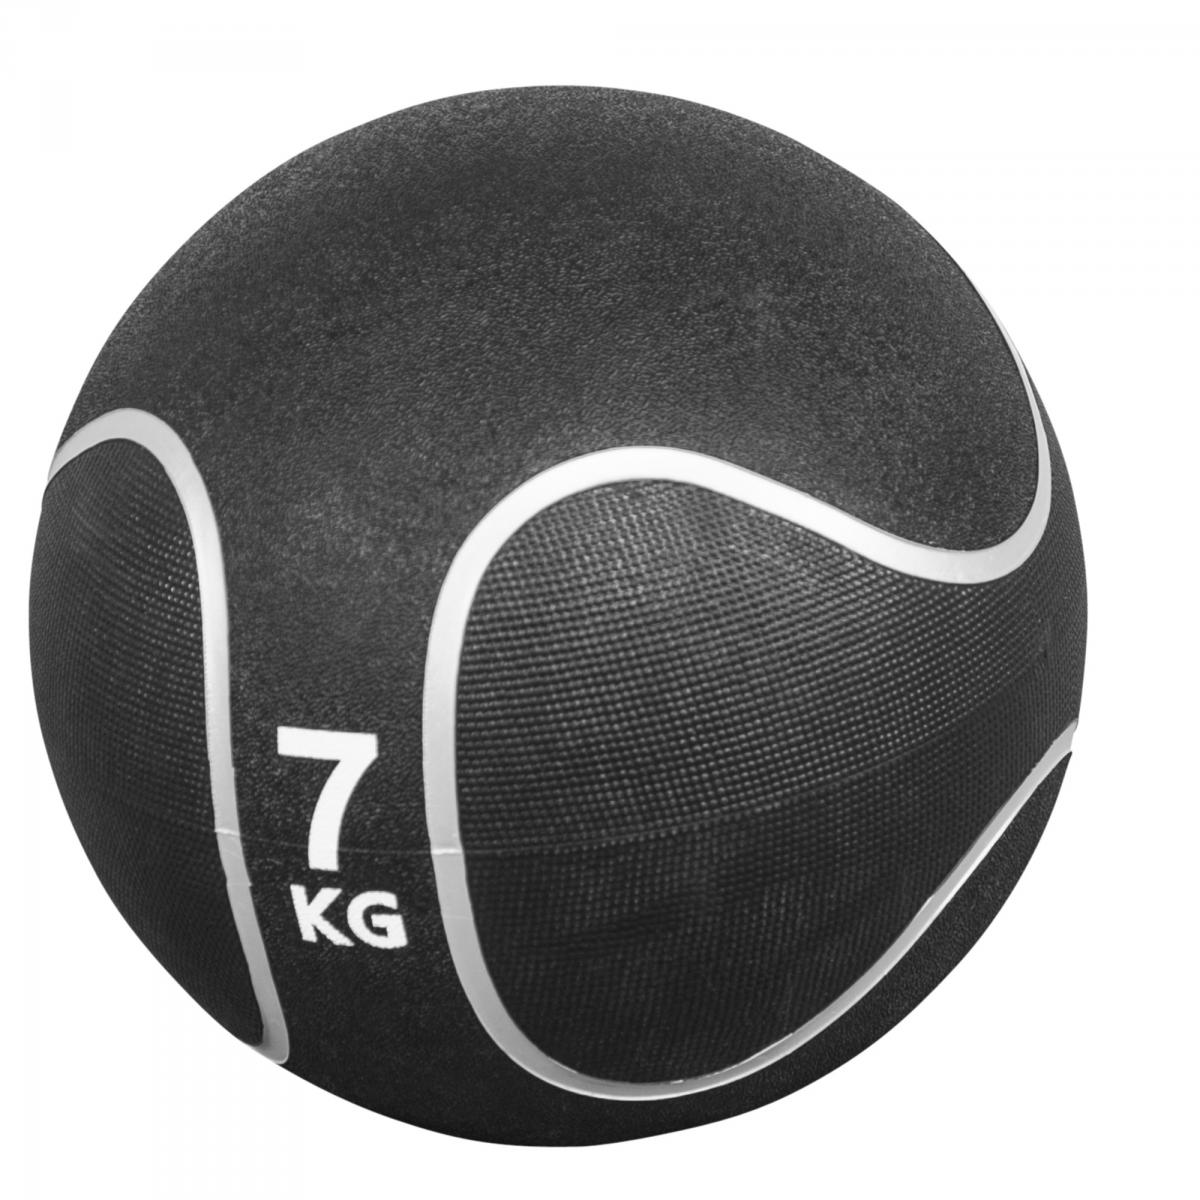 Médecine ball style noir/gris de 7 KG diamètre 28,6cm